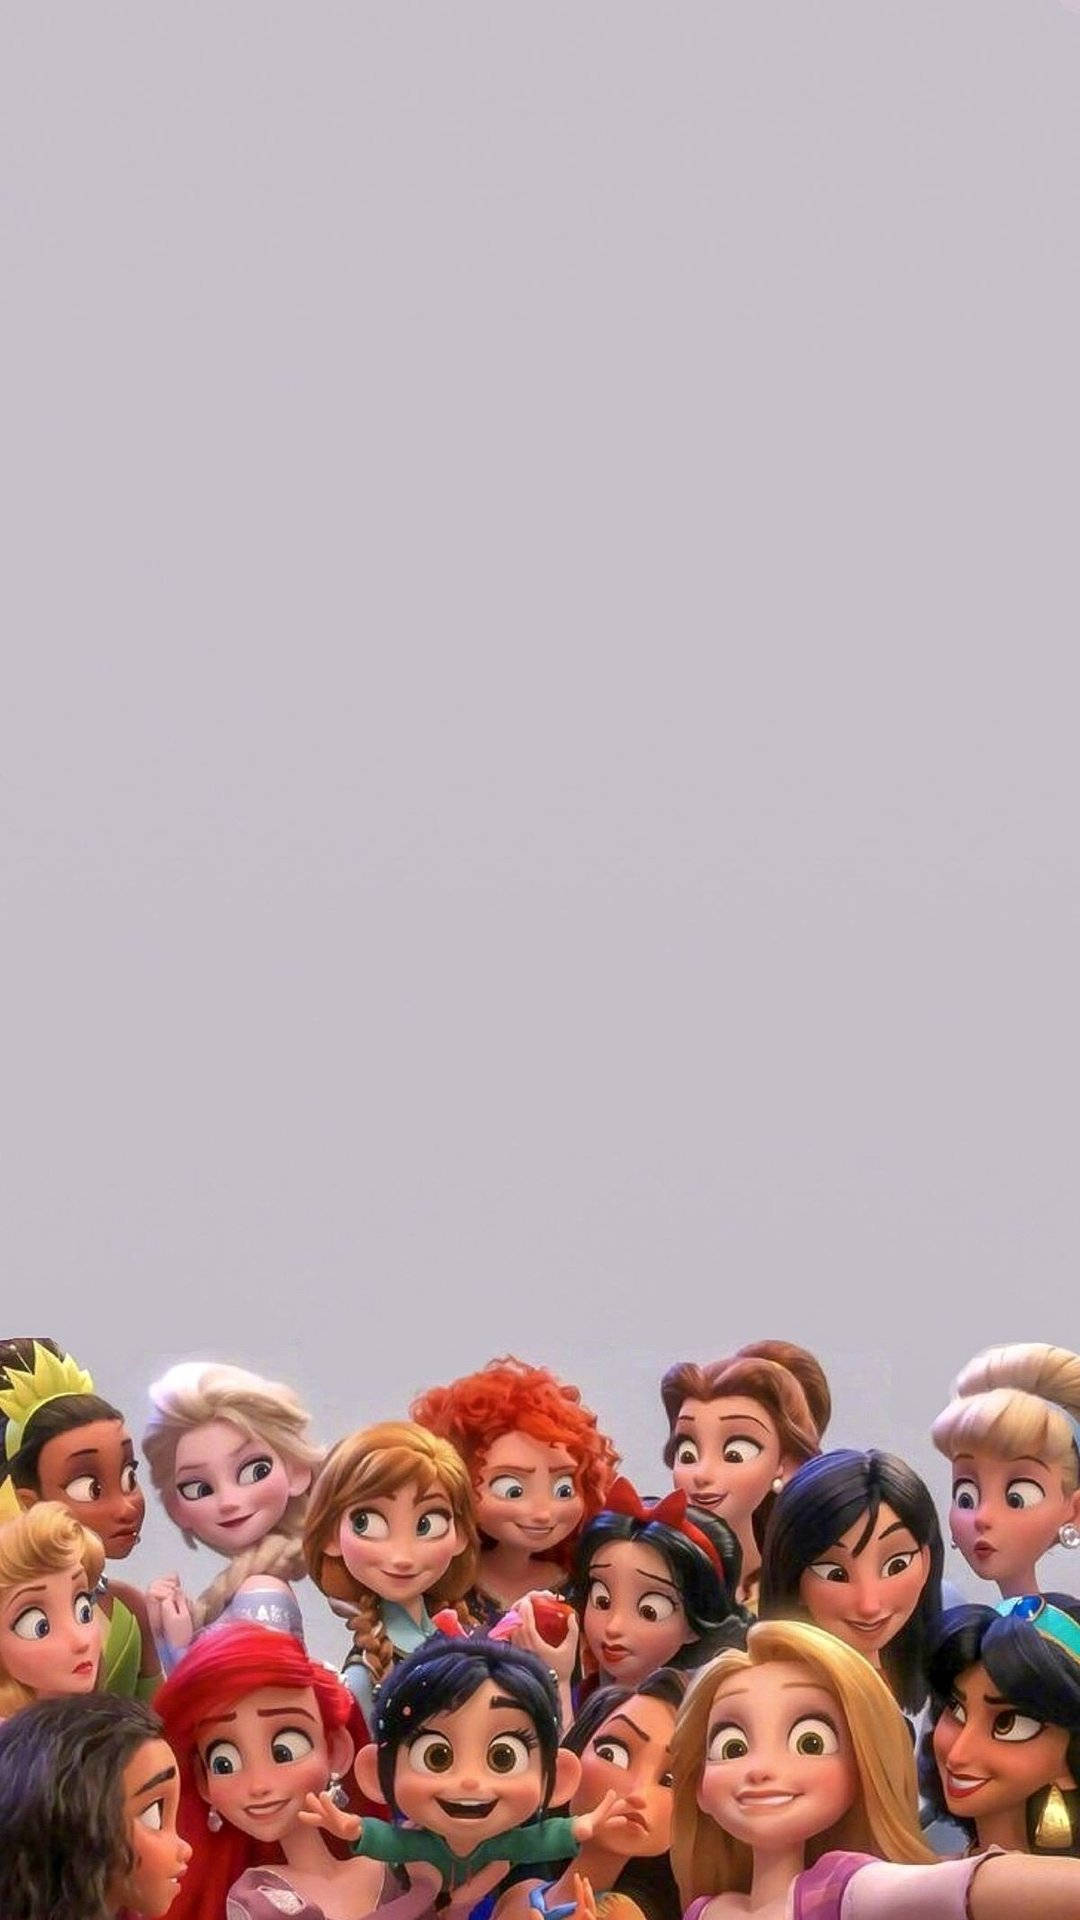 Download free Disney Princesses Tumblr Aesthetic Wallpaper 